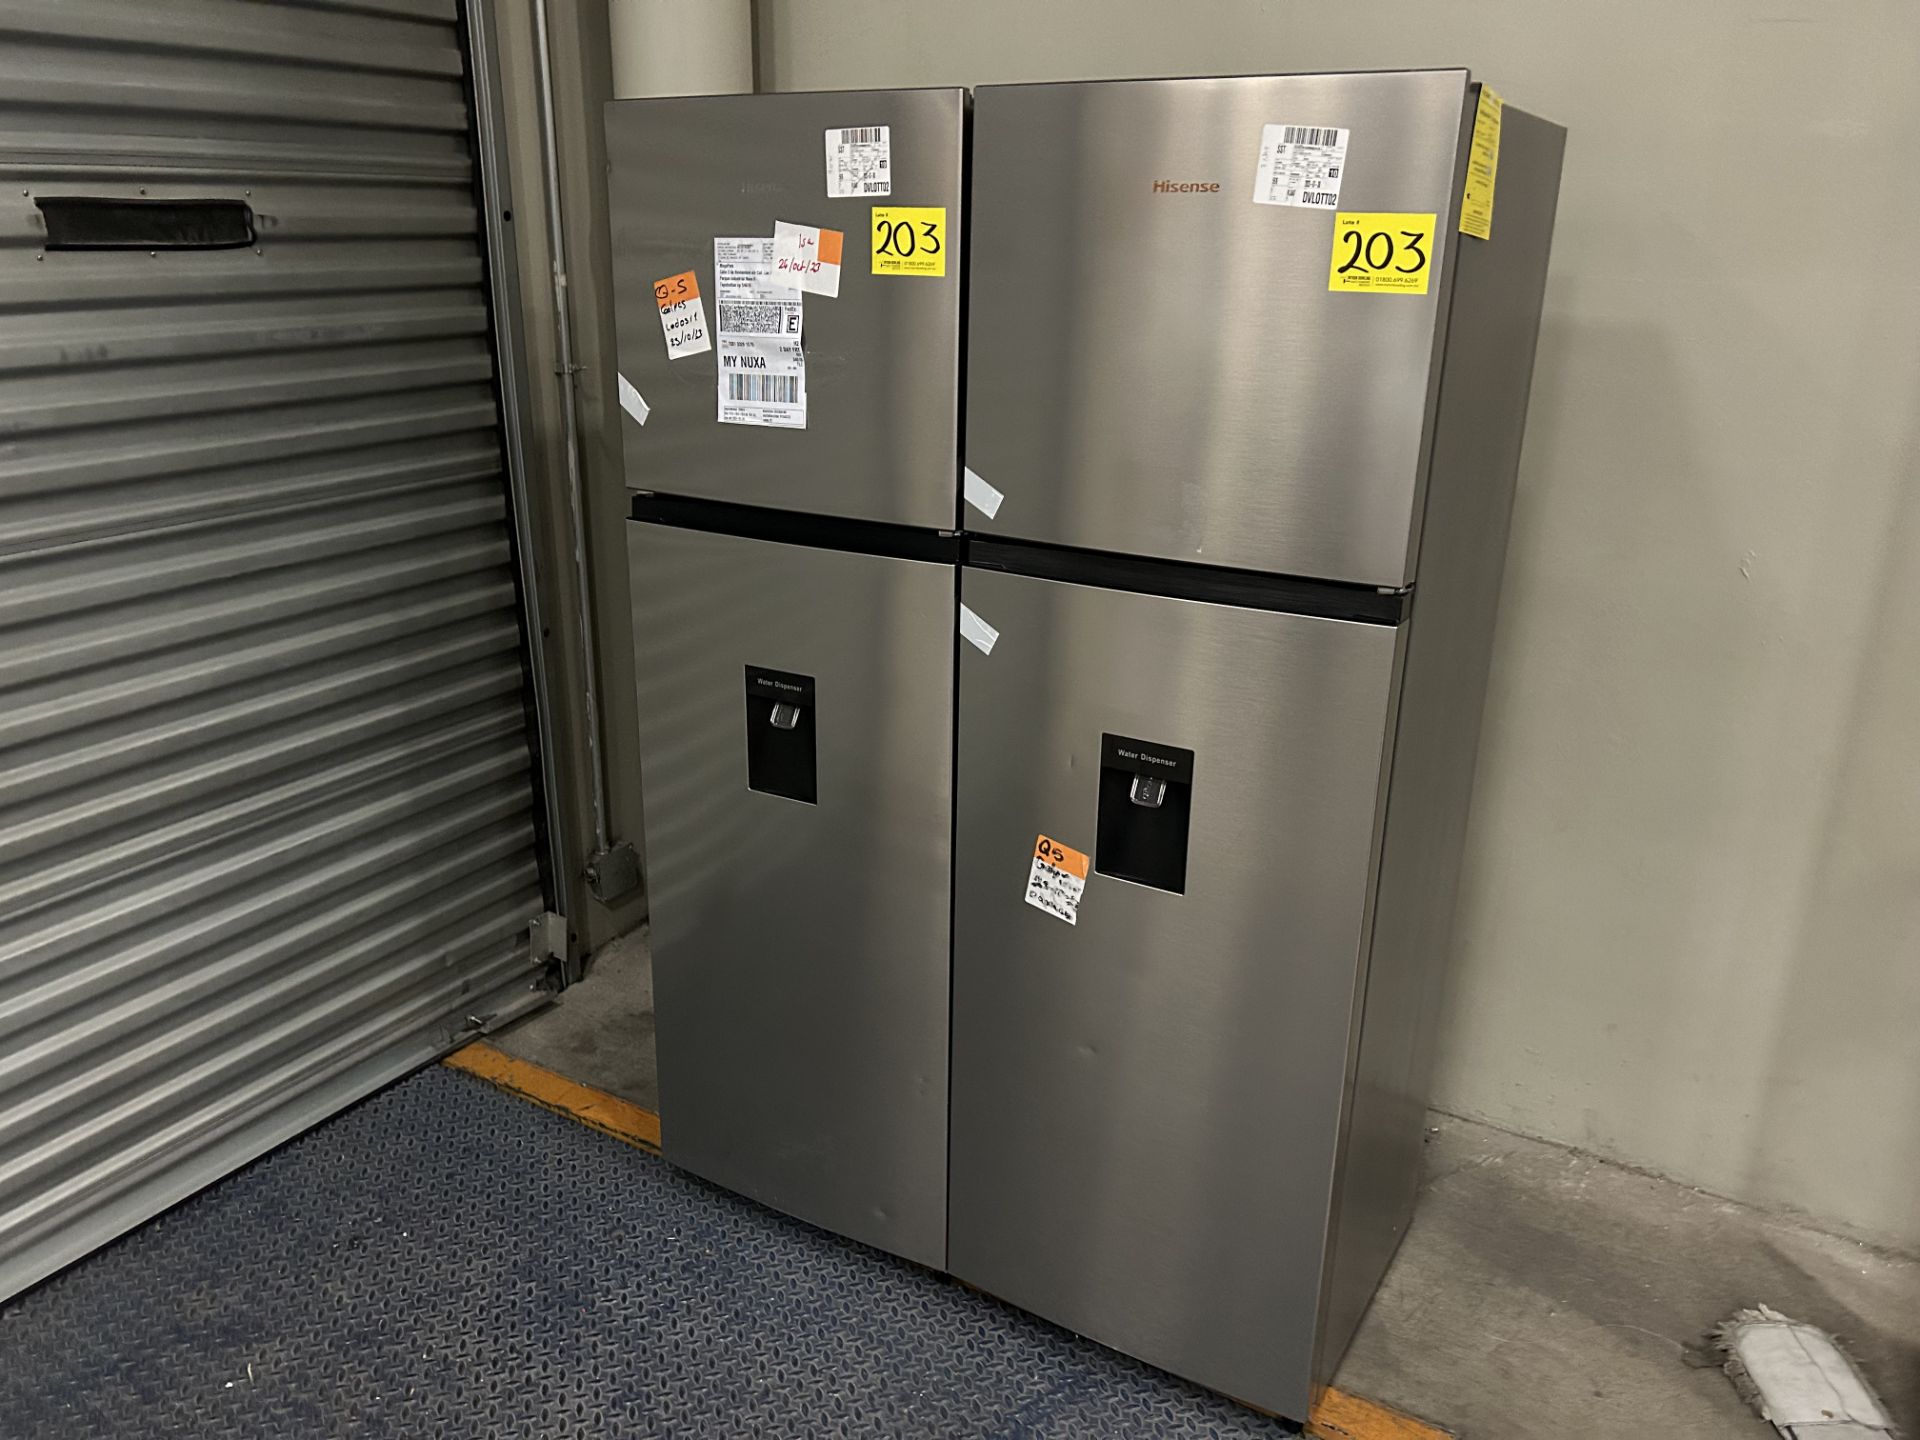 Lote de 2 Refrigeradores contiene: 1 Refrigerador con dispensador de agua Marca HISENSE, Modelo RT9 - Image 2 of 6